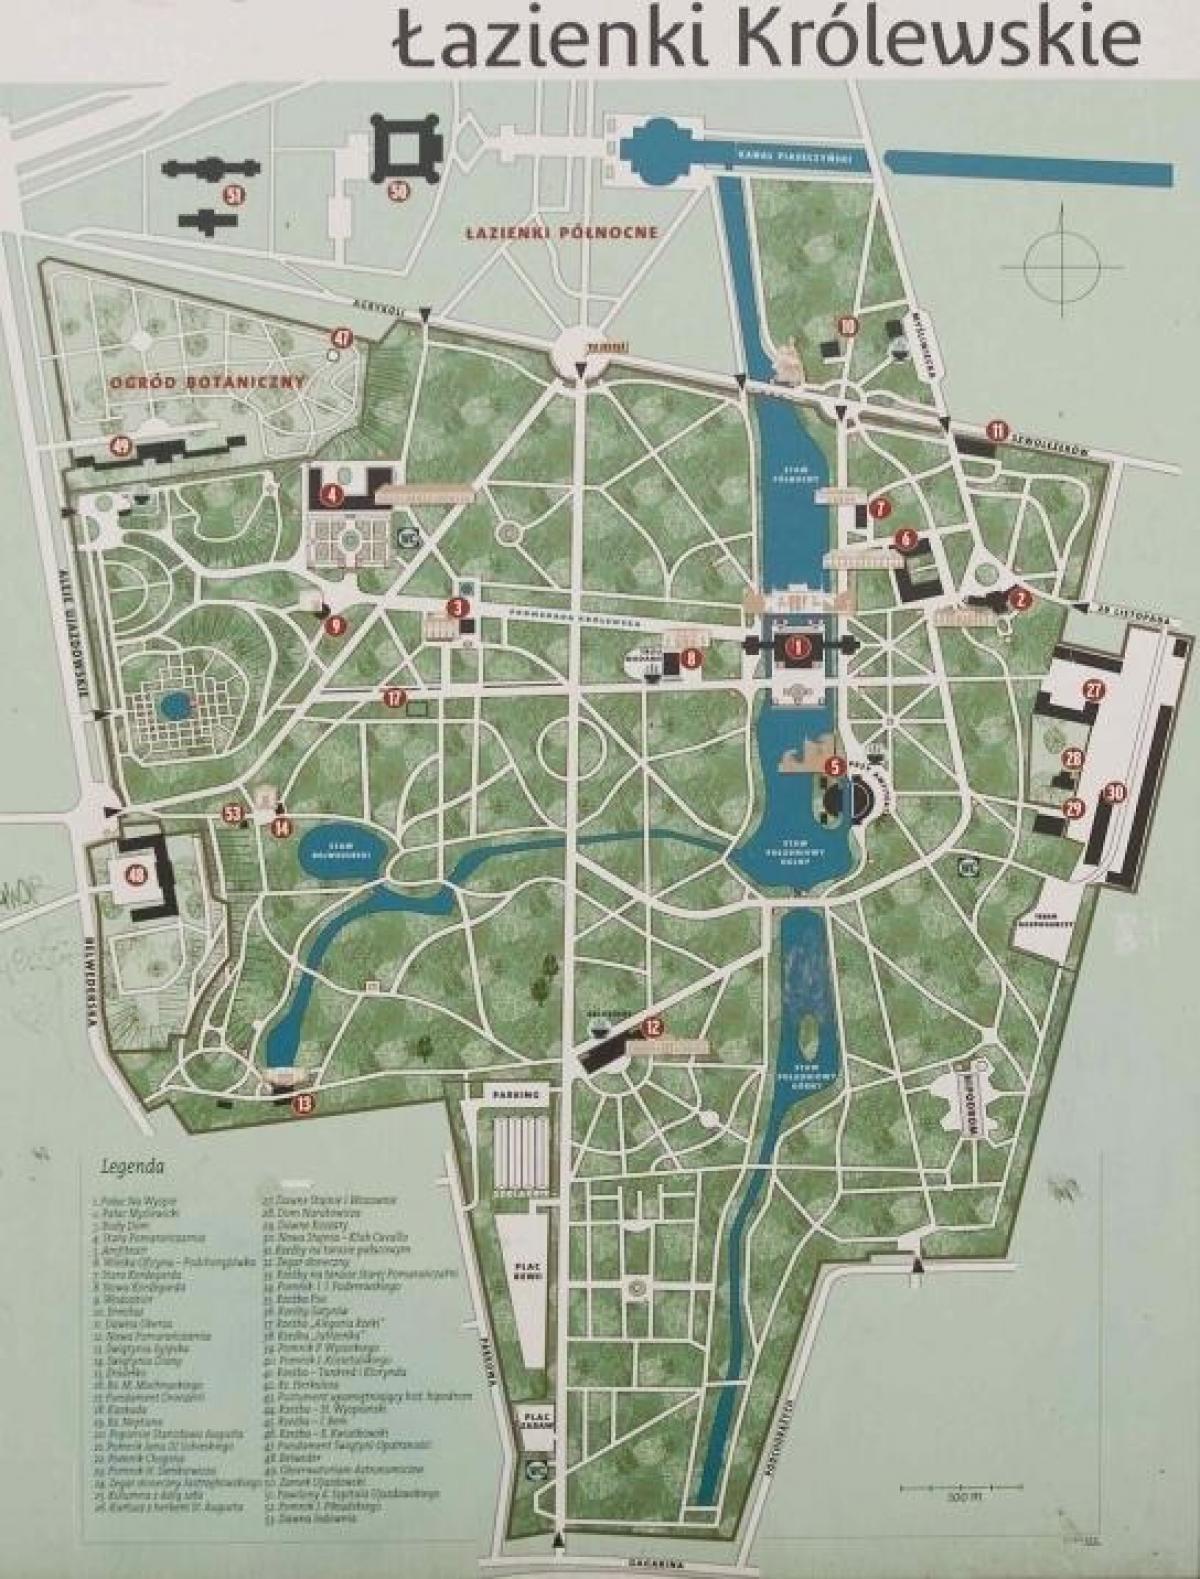 łazienki królewskie w Warszawie mapie